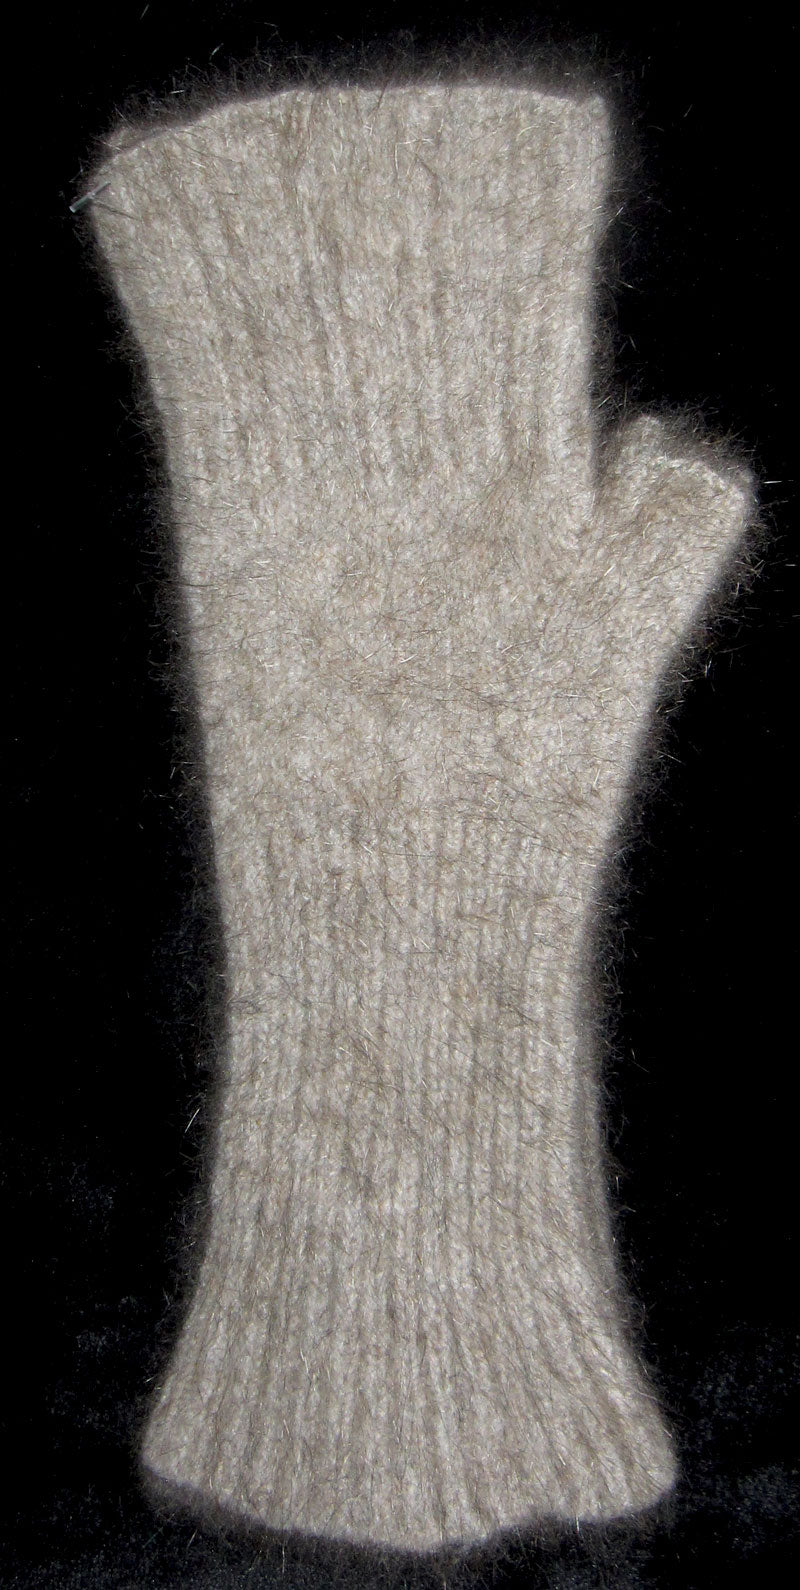 Fingerless Mitts - Merino Wool, NZ Possum, and Silk - Small